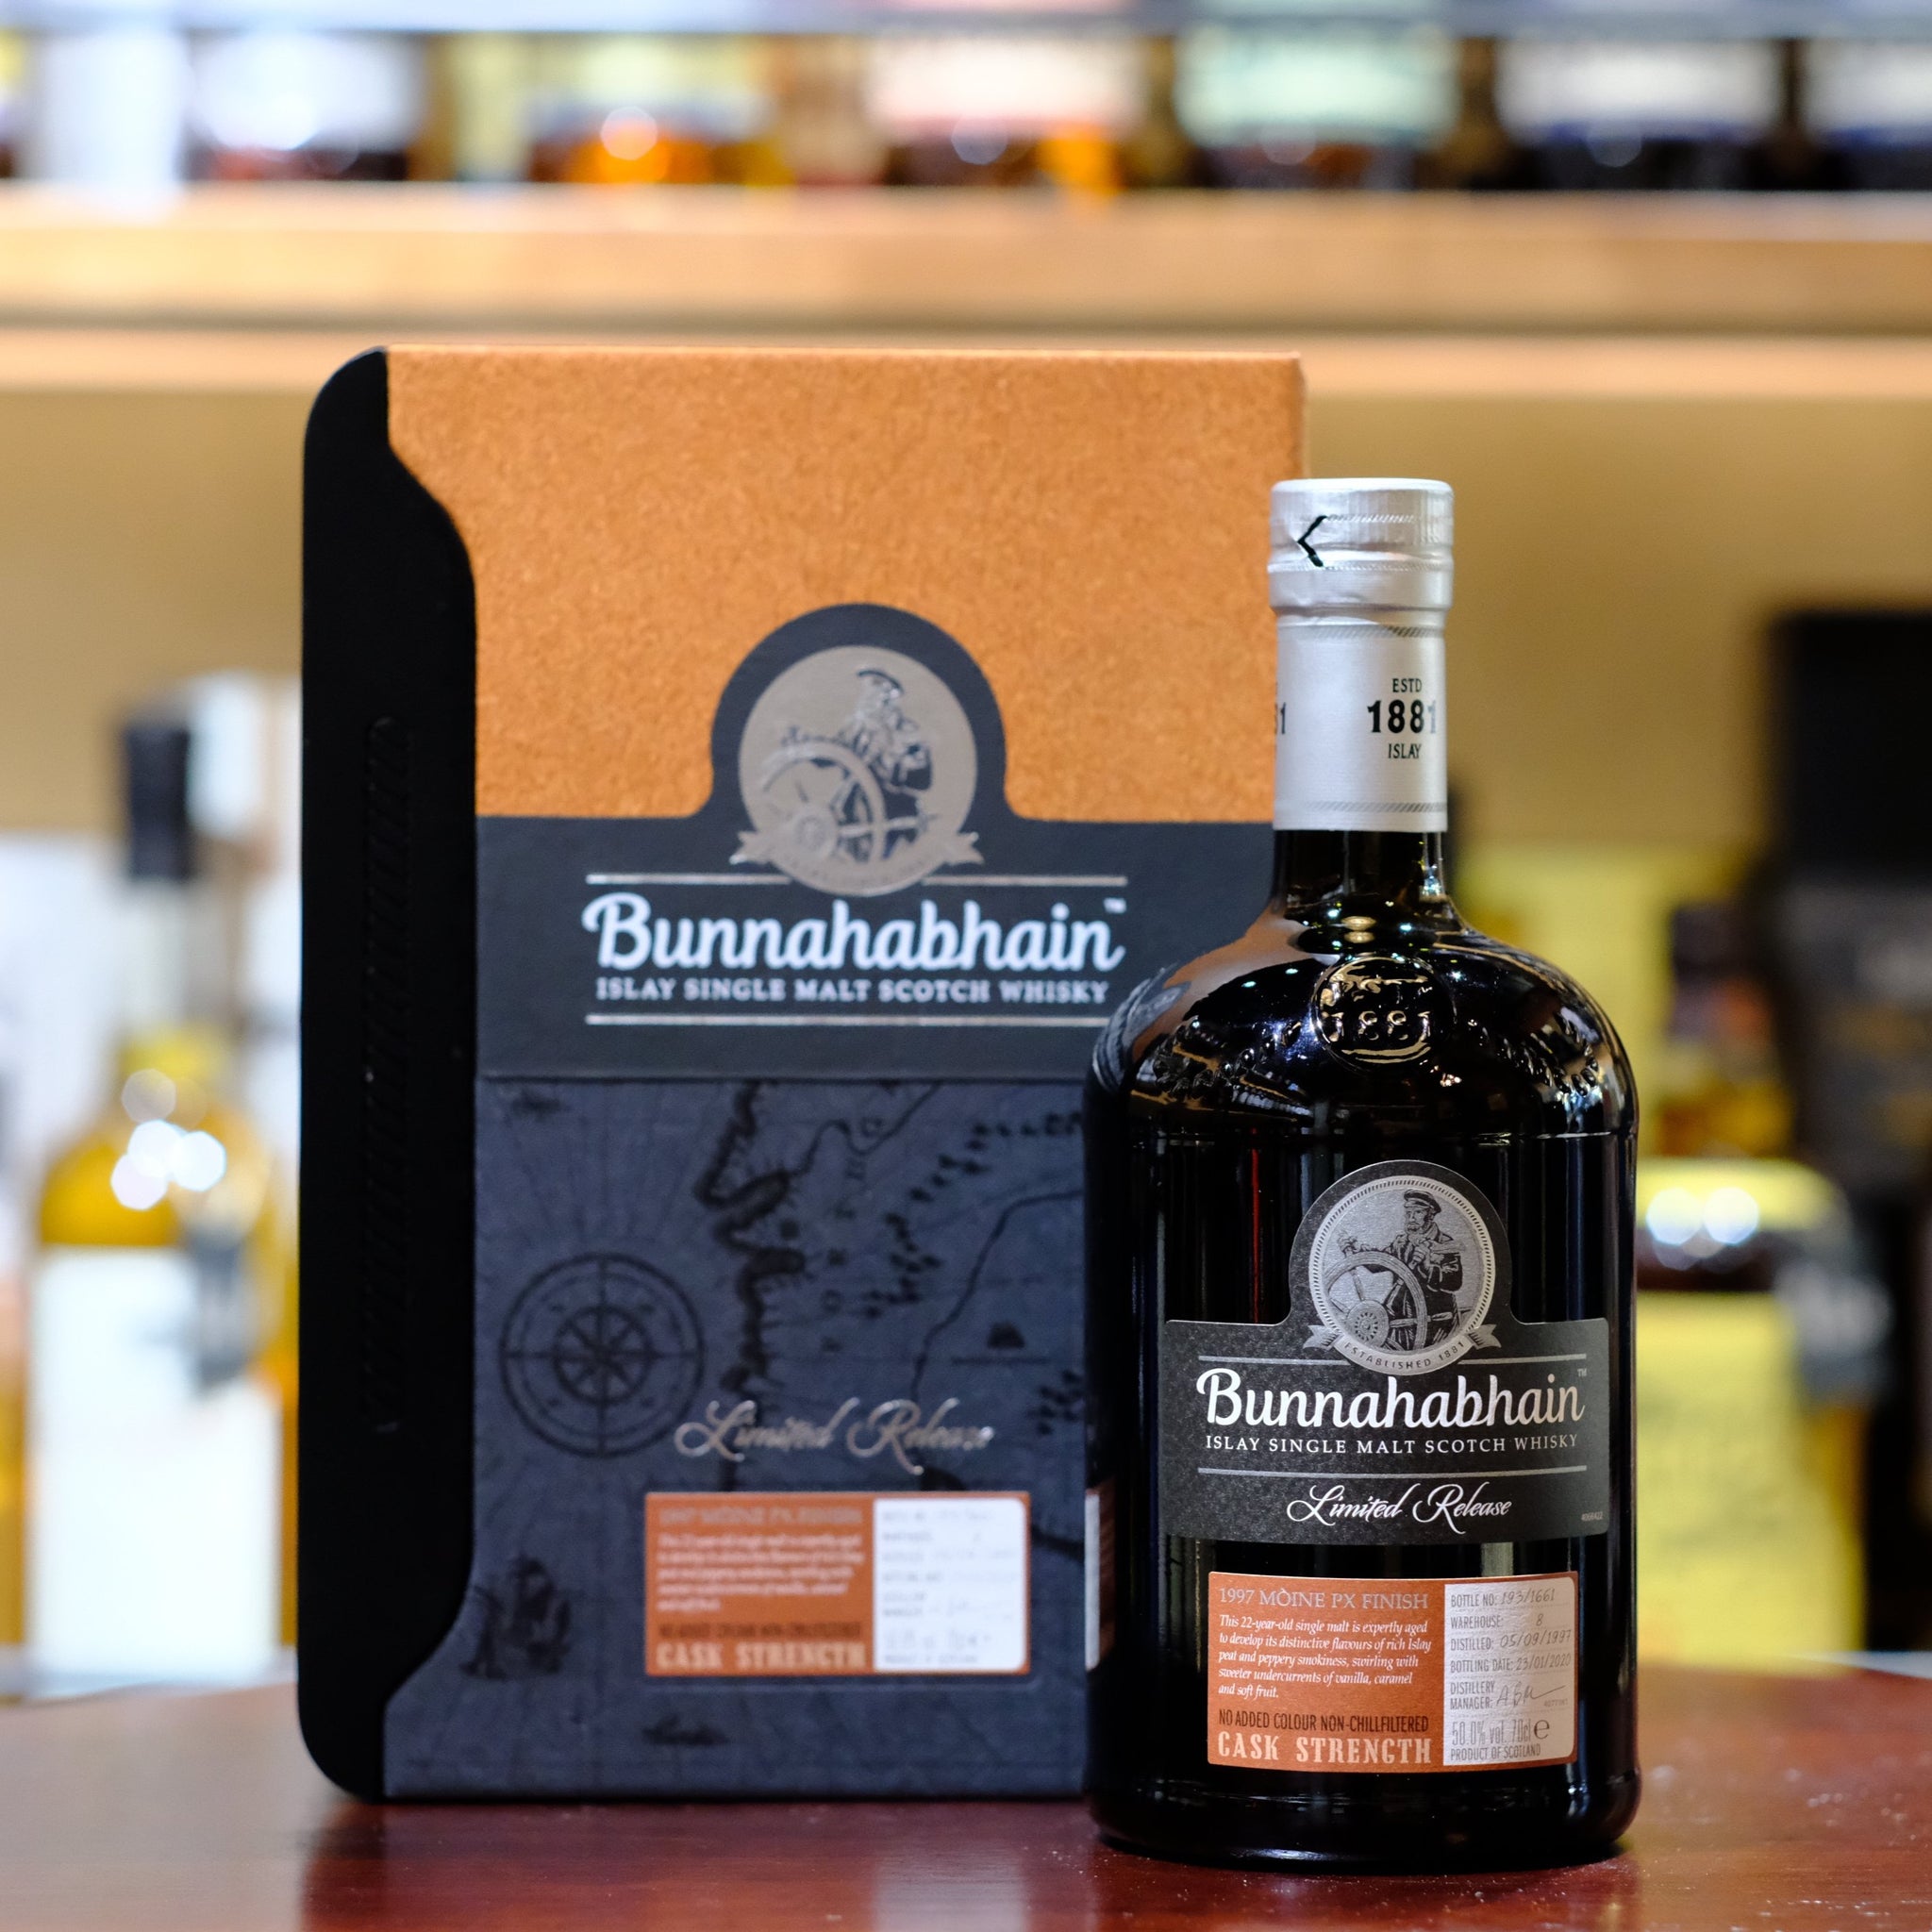 Bunnahabhain 22 Year Old 1997 Moine PX Finish Single Malt Scotch Whisky